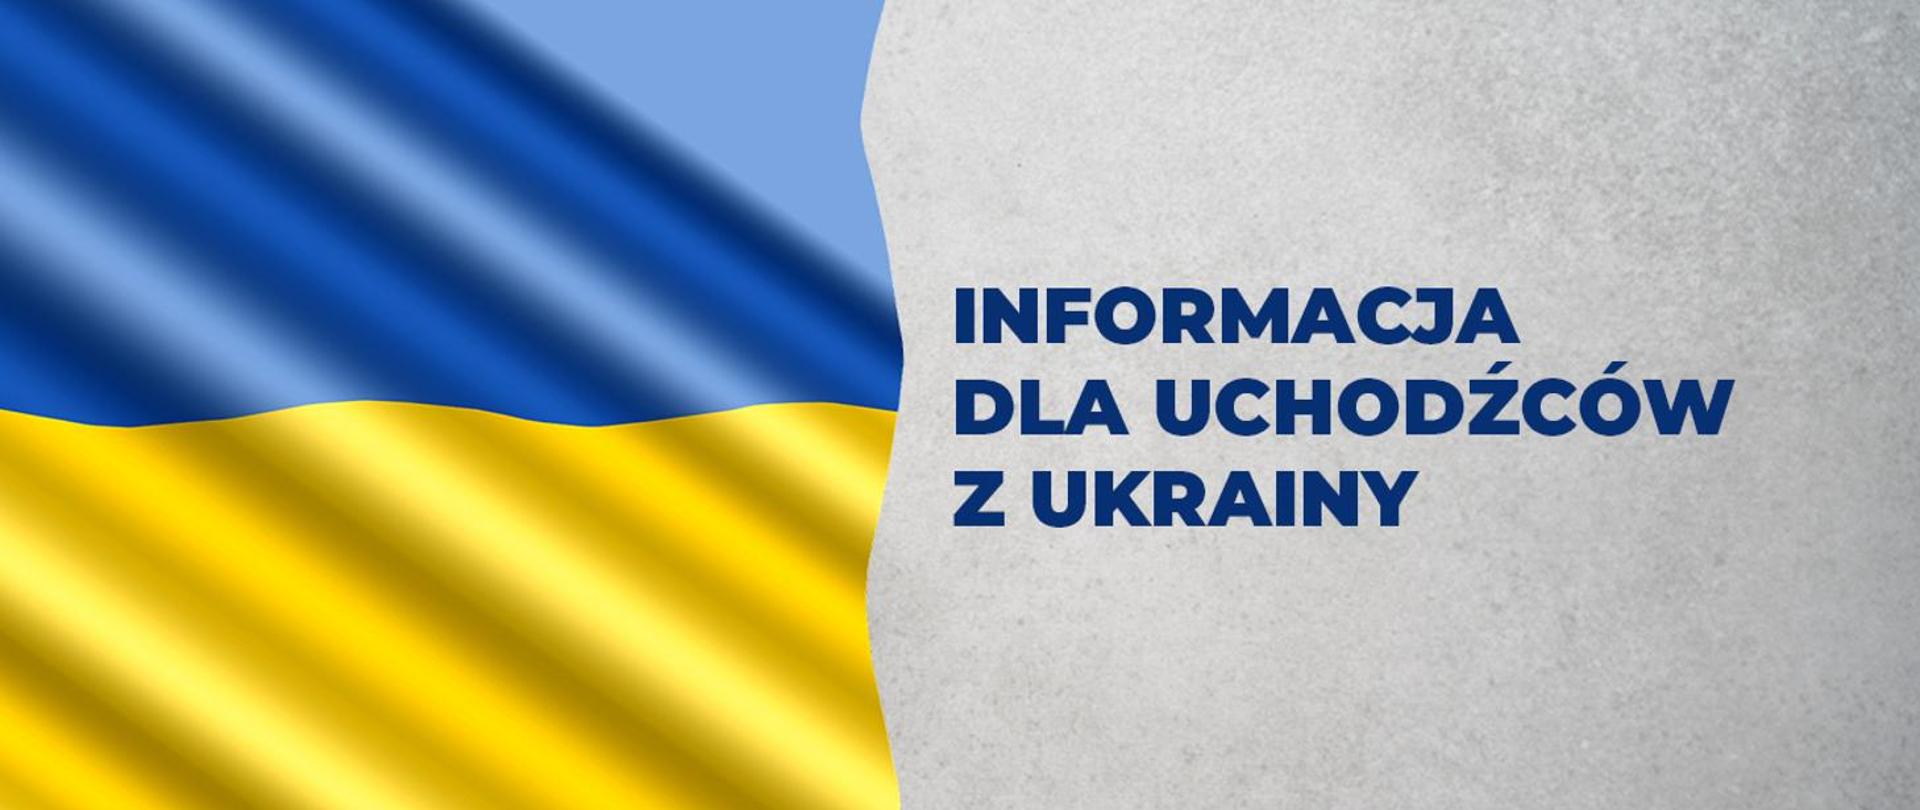 Plansza - Informacja dla uchodźców z Ukrainy 